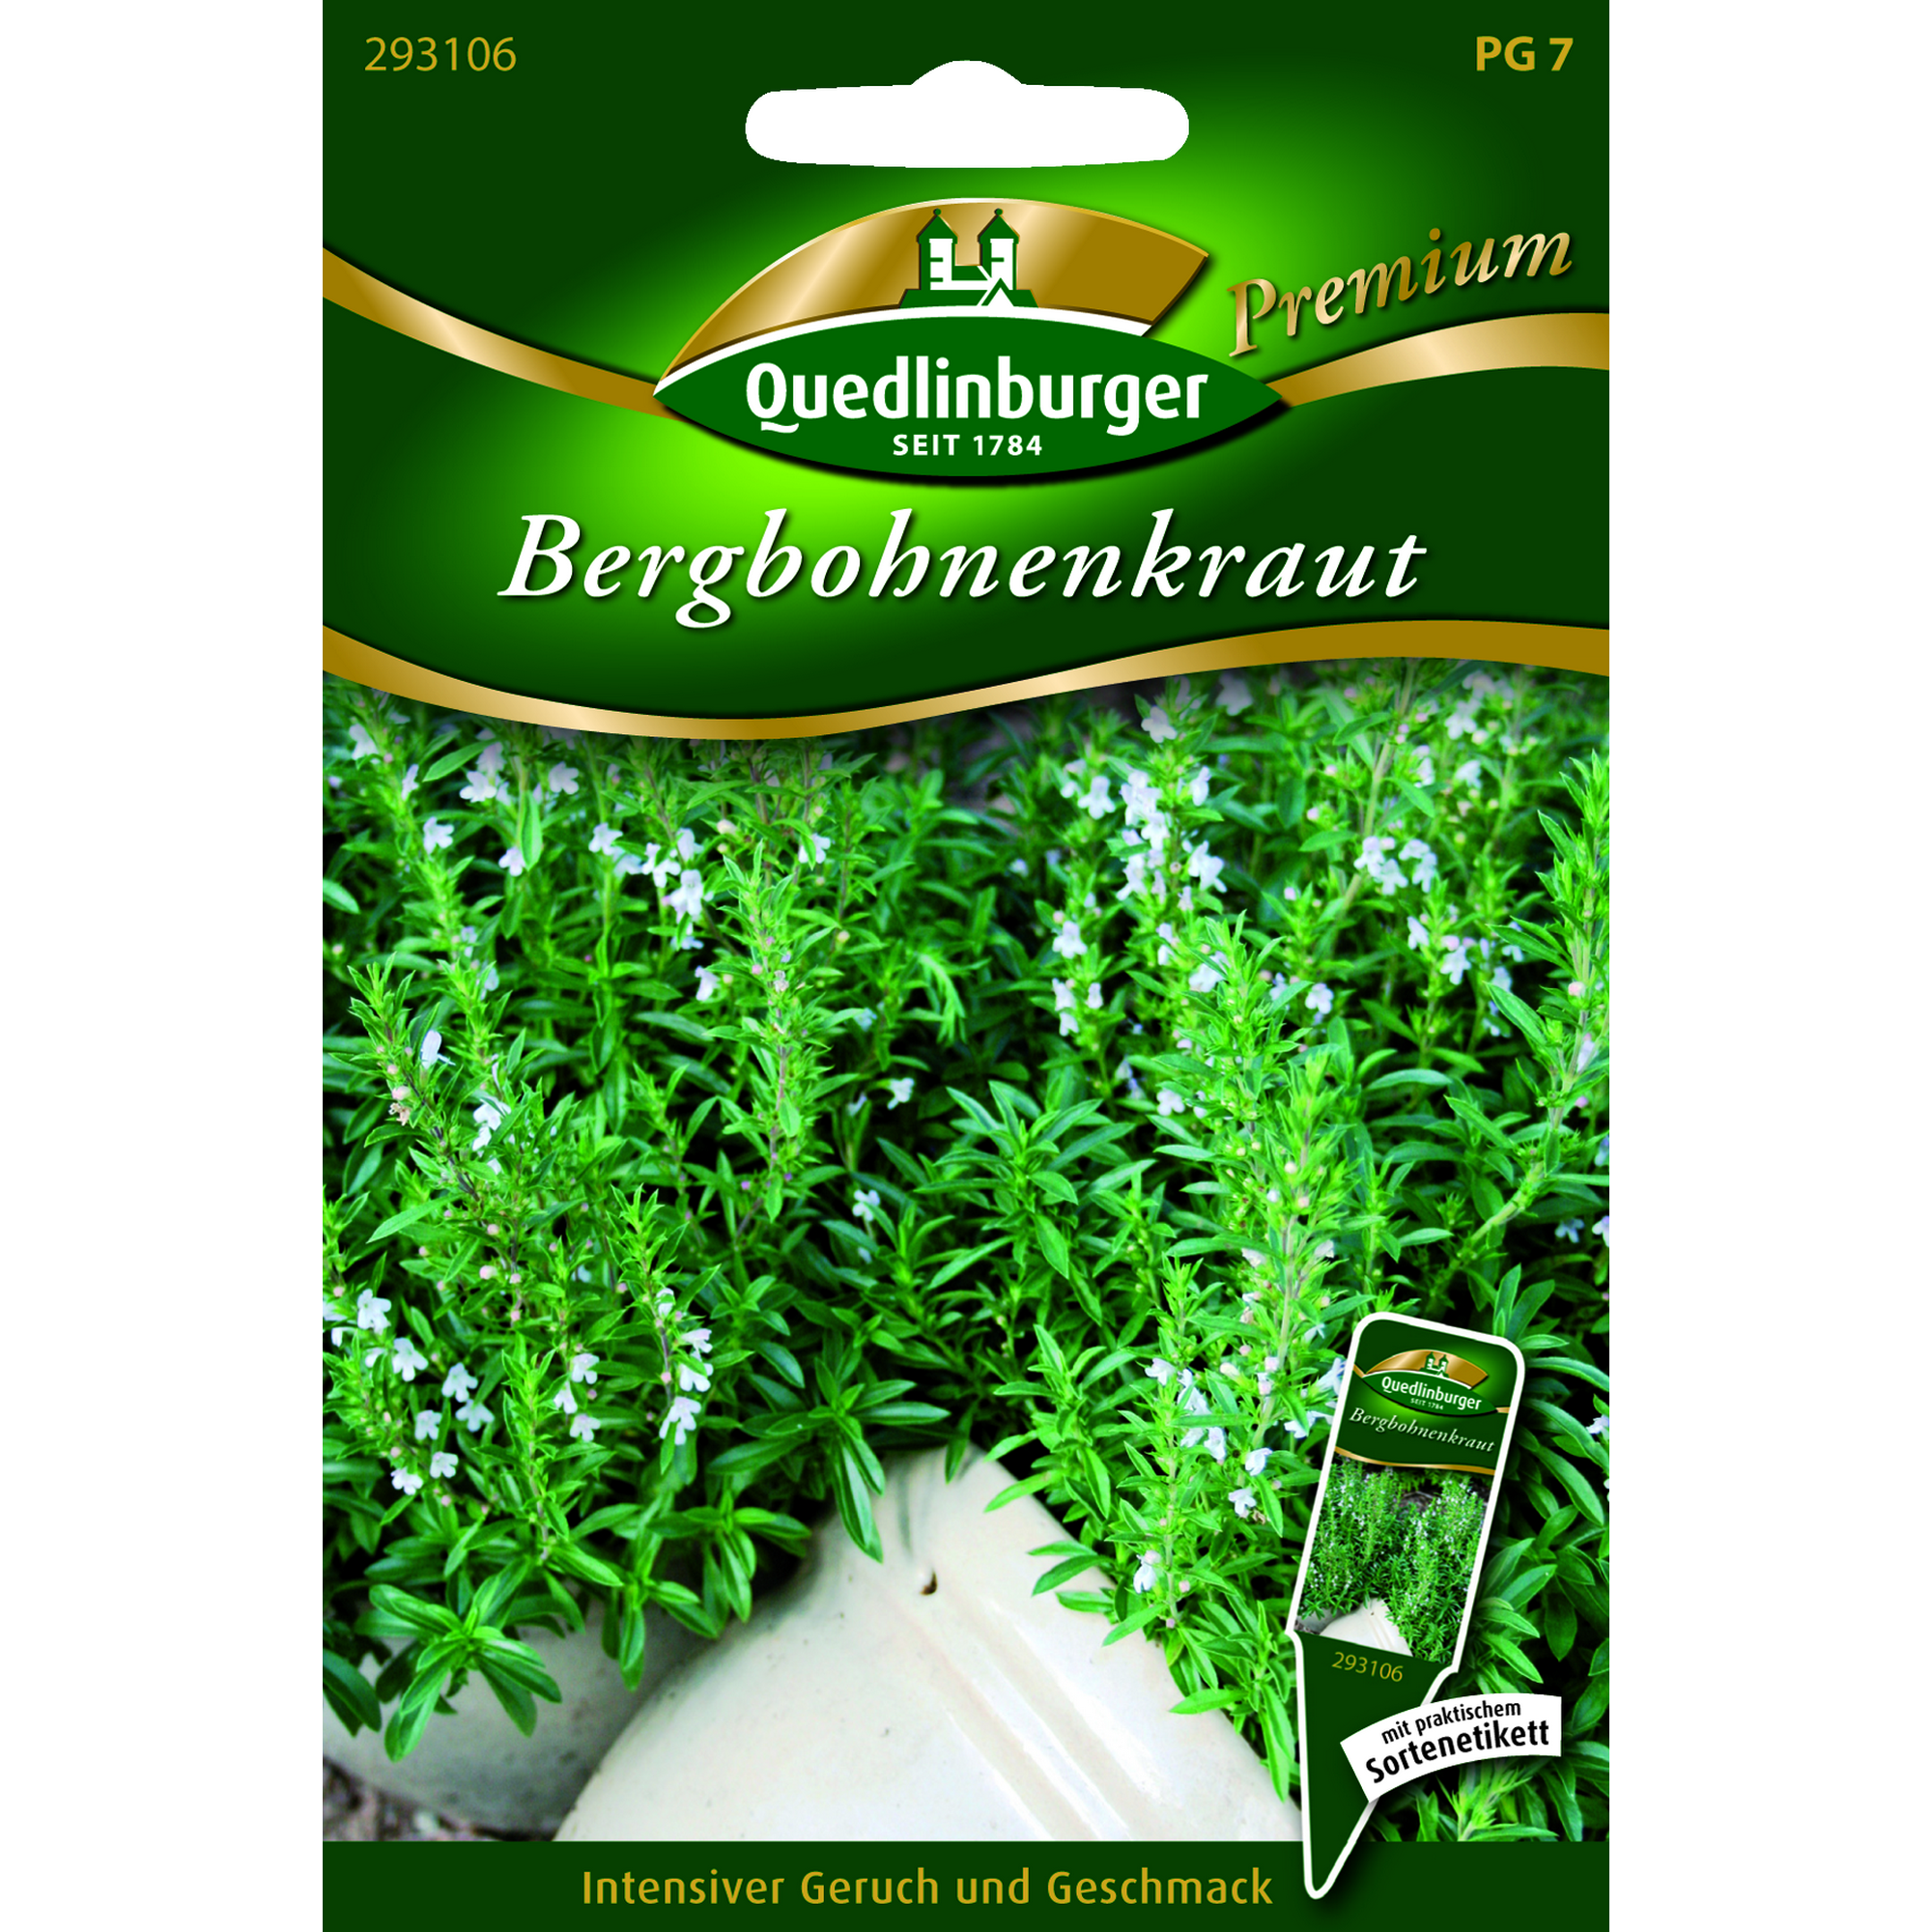 Premium Bergbohnenkraut + product picture